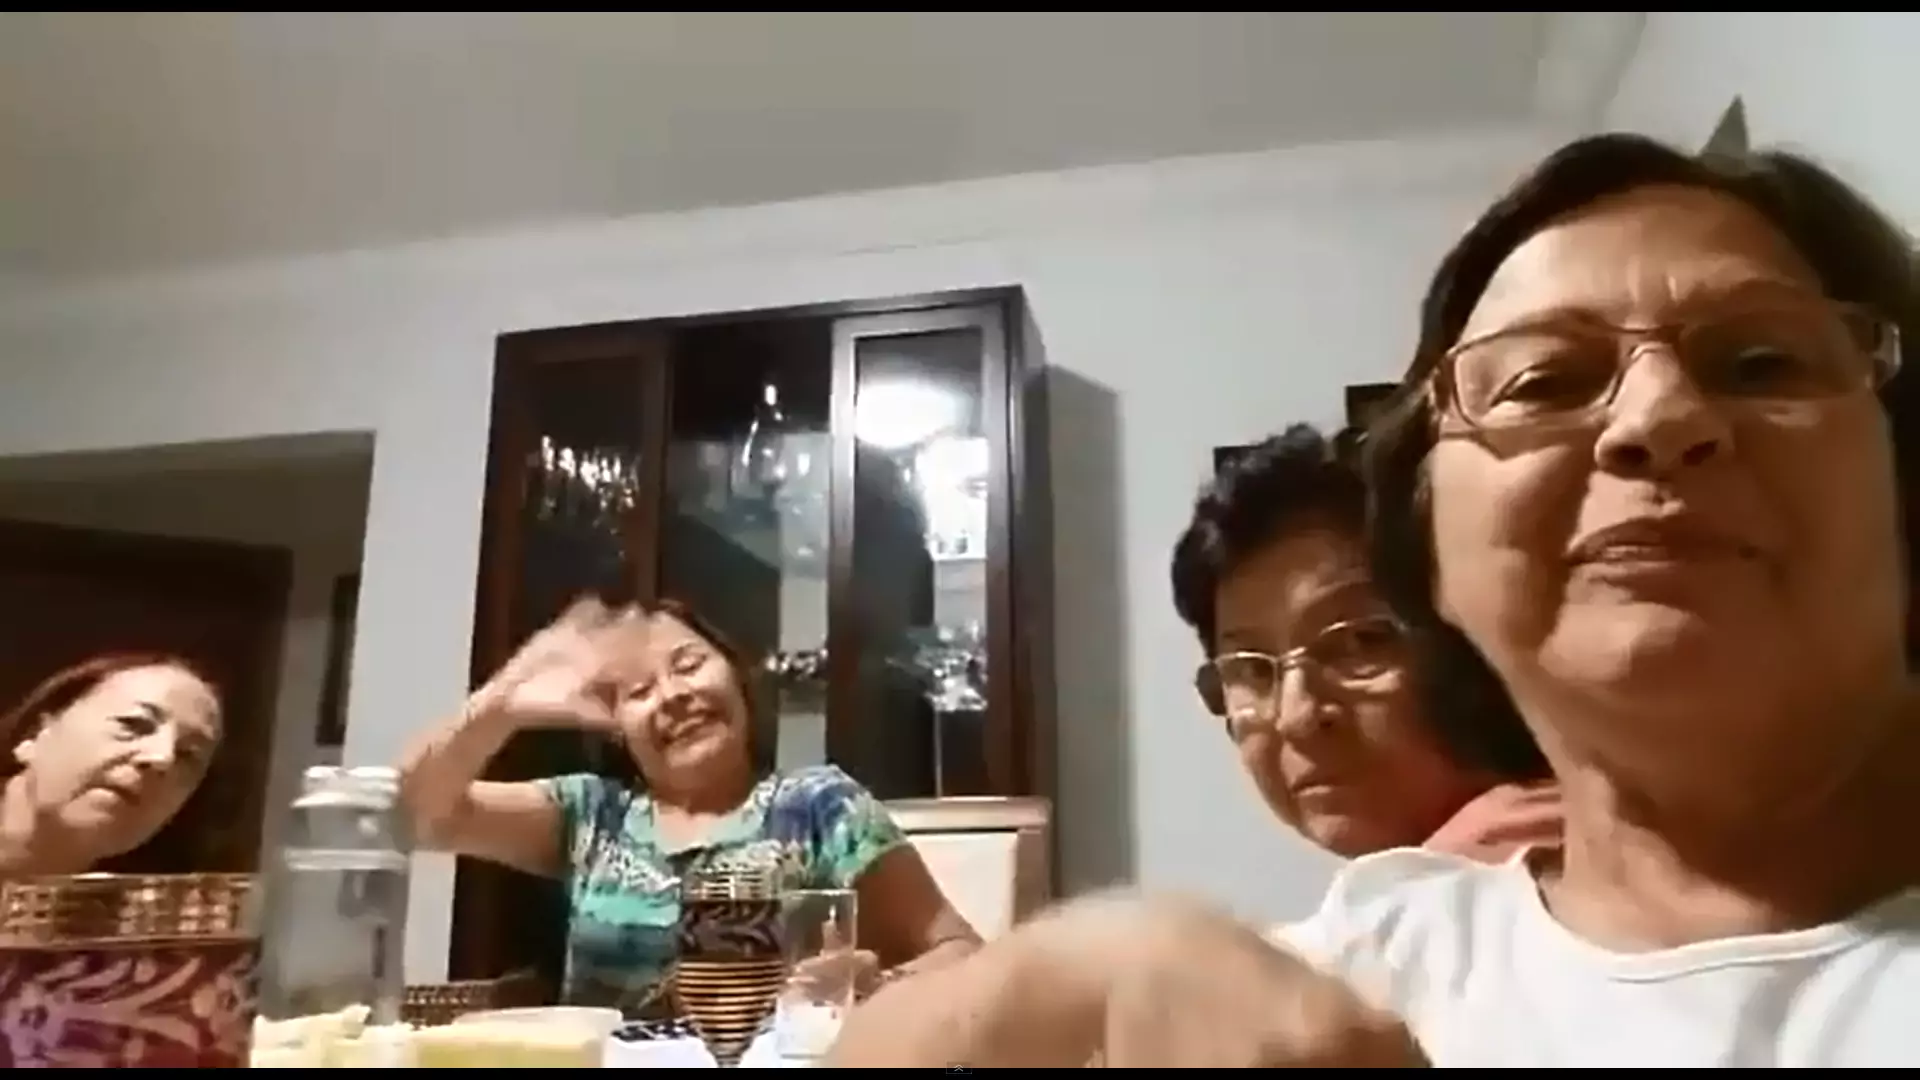 Zamiast pierwszego selfie w życiu, babcia nagrała filmik. "Powiedz penis, powiedz penis!"